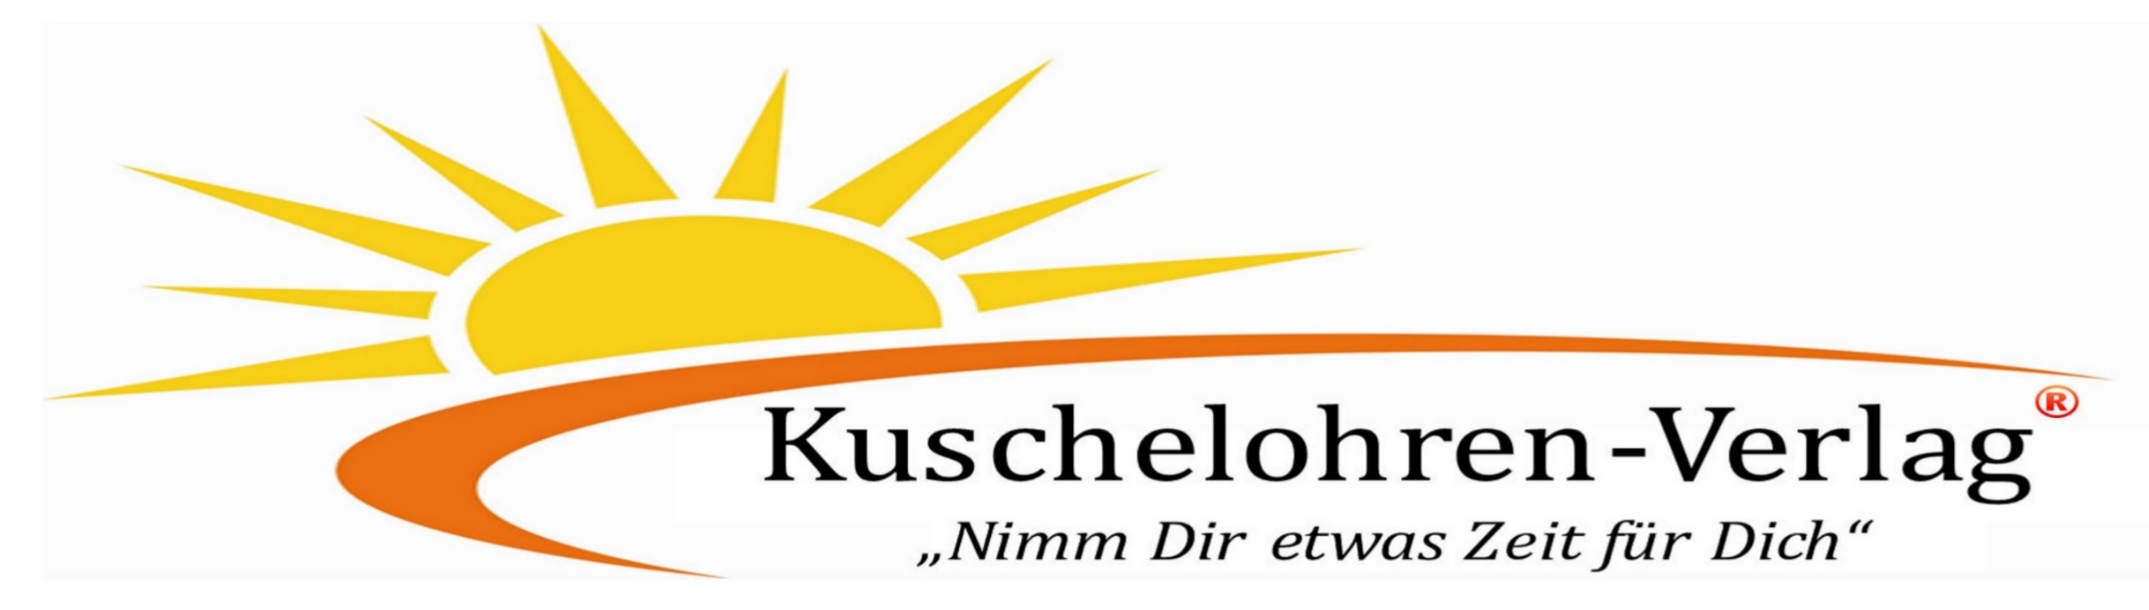 Kuschelohren-Verlag